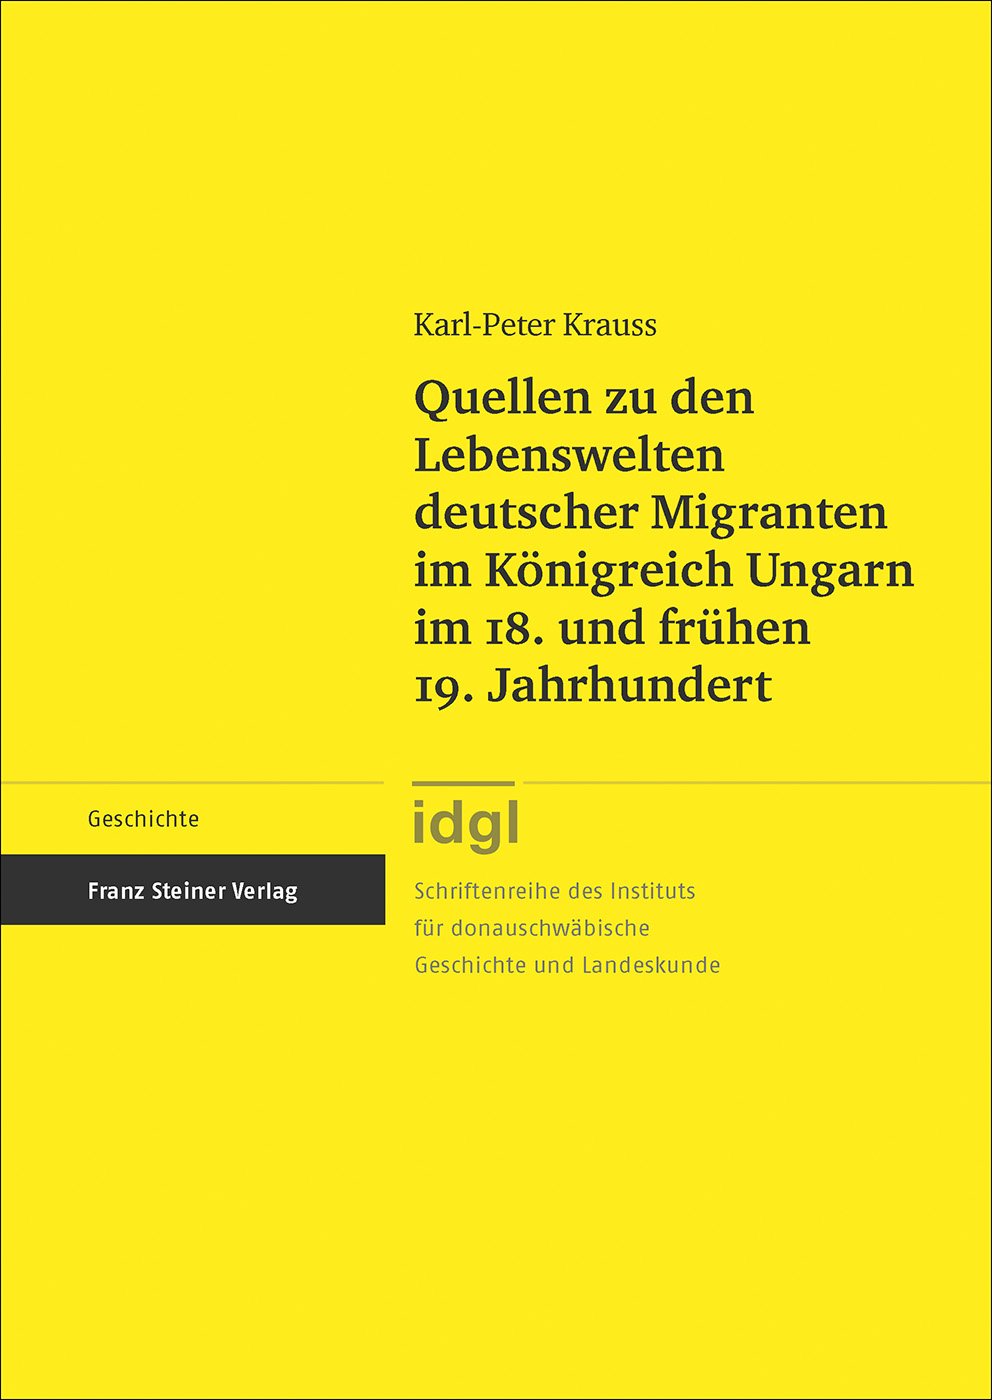 Quellen zu den Lebenswelten deutscher Migranten im Königreich Ungarn im 18. und frühen 19. Jahrhundert